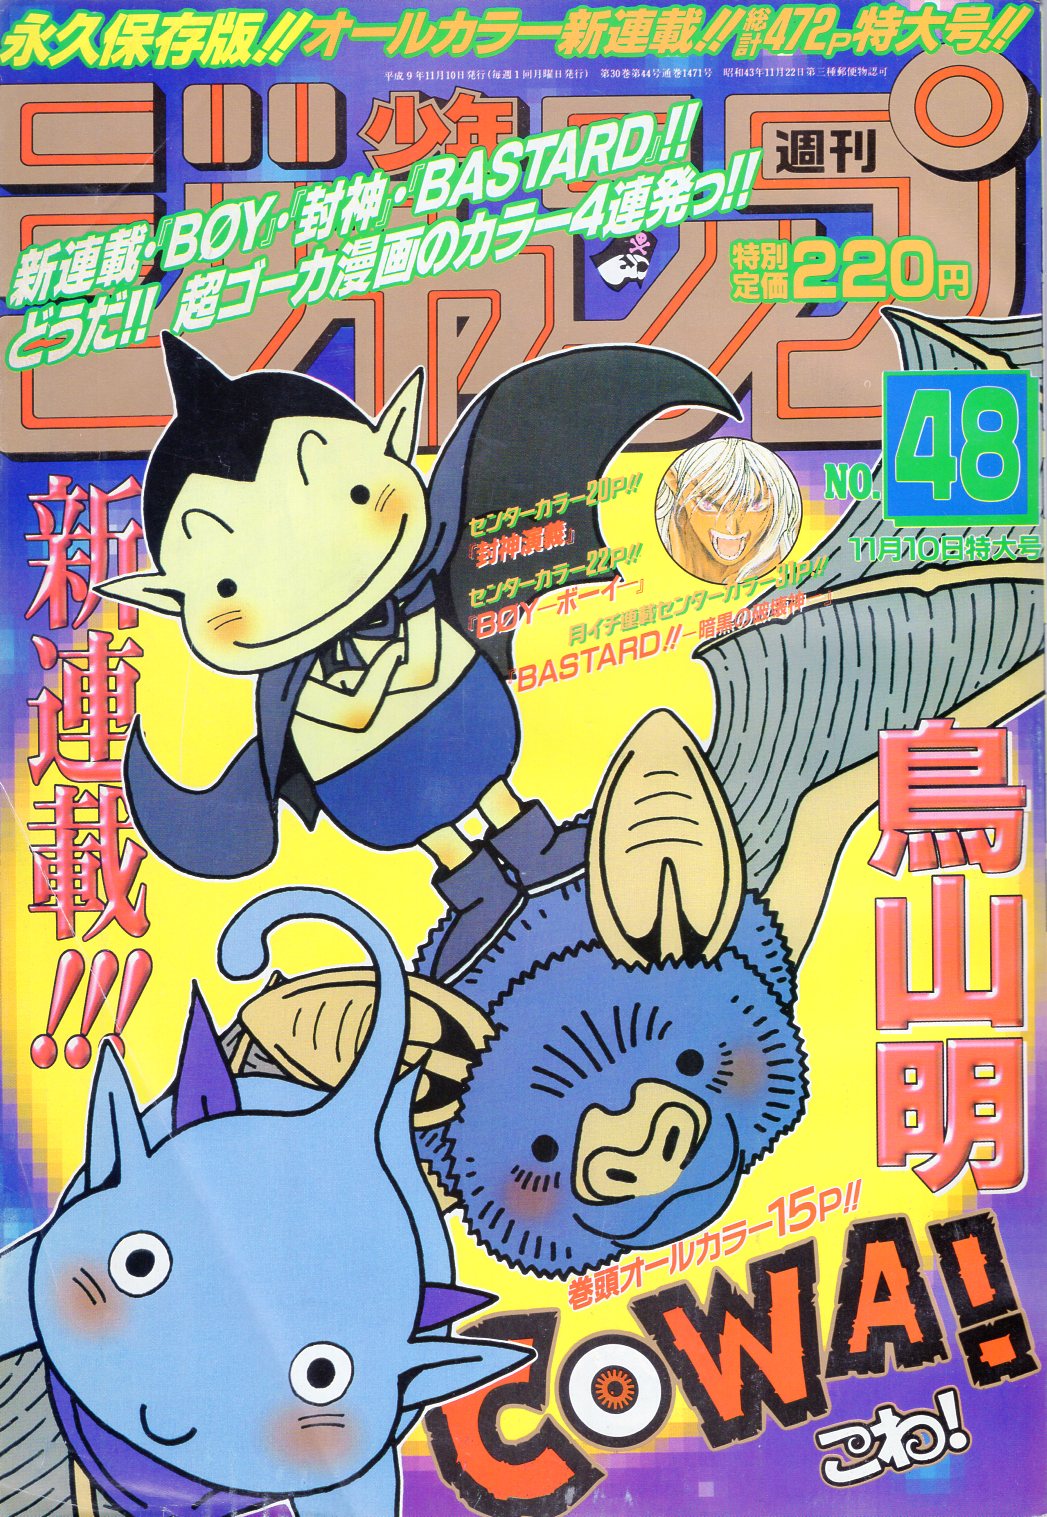 集英社 1997年 平成9年 の漫画雑誌 週刊少年ジャンプ 1997年 平成9年 48 9748 まんだらけ Mandarake